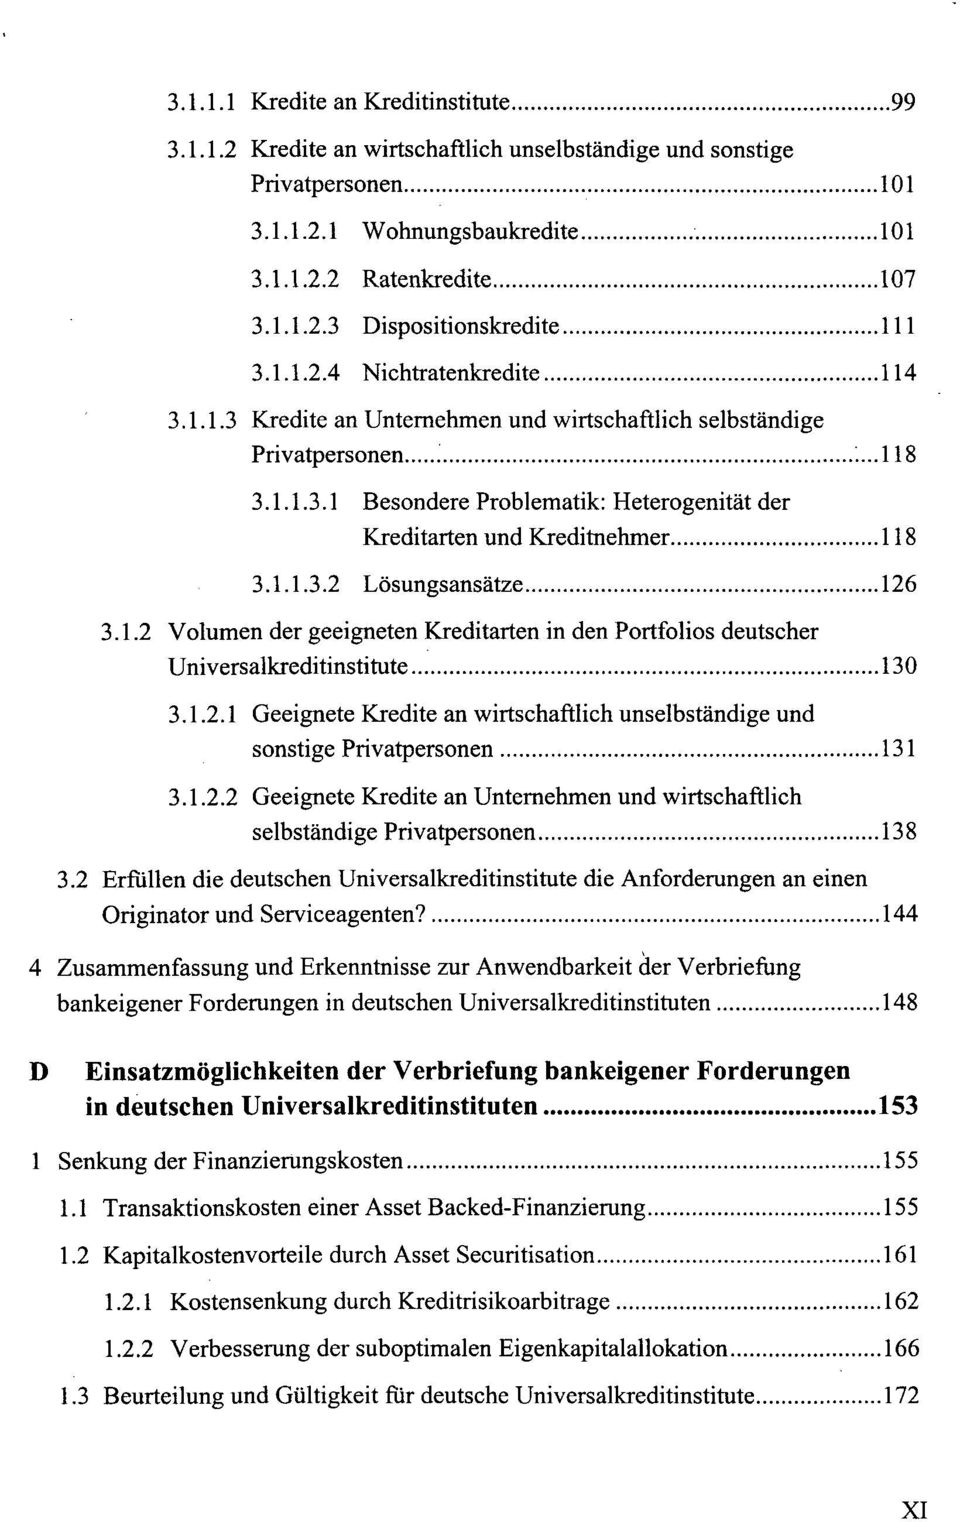 1.1.3.2 Lösungsansätze 126 3.1.2 Volumen der geeigneten Kreditarten in den Portfolios deutscher Universalkreditinstitute 130 3.1.2.1 Geeignete Kredite an wirtschaftlich unselbständige und sonstige Privatpersonen 131 3.